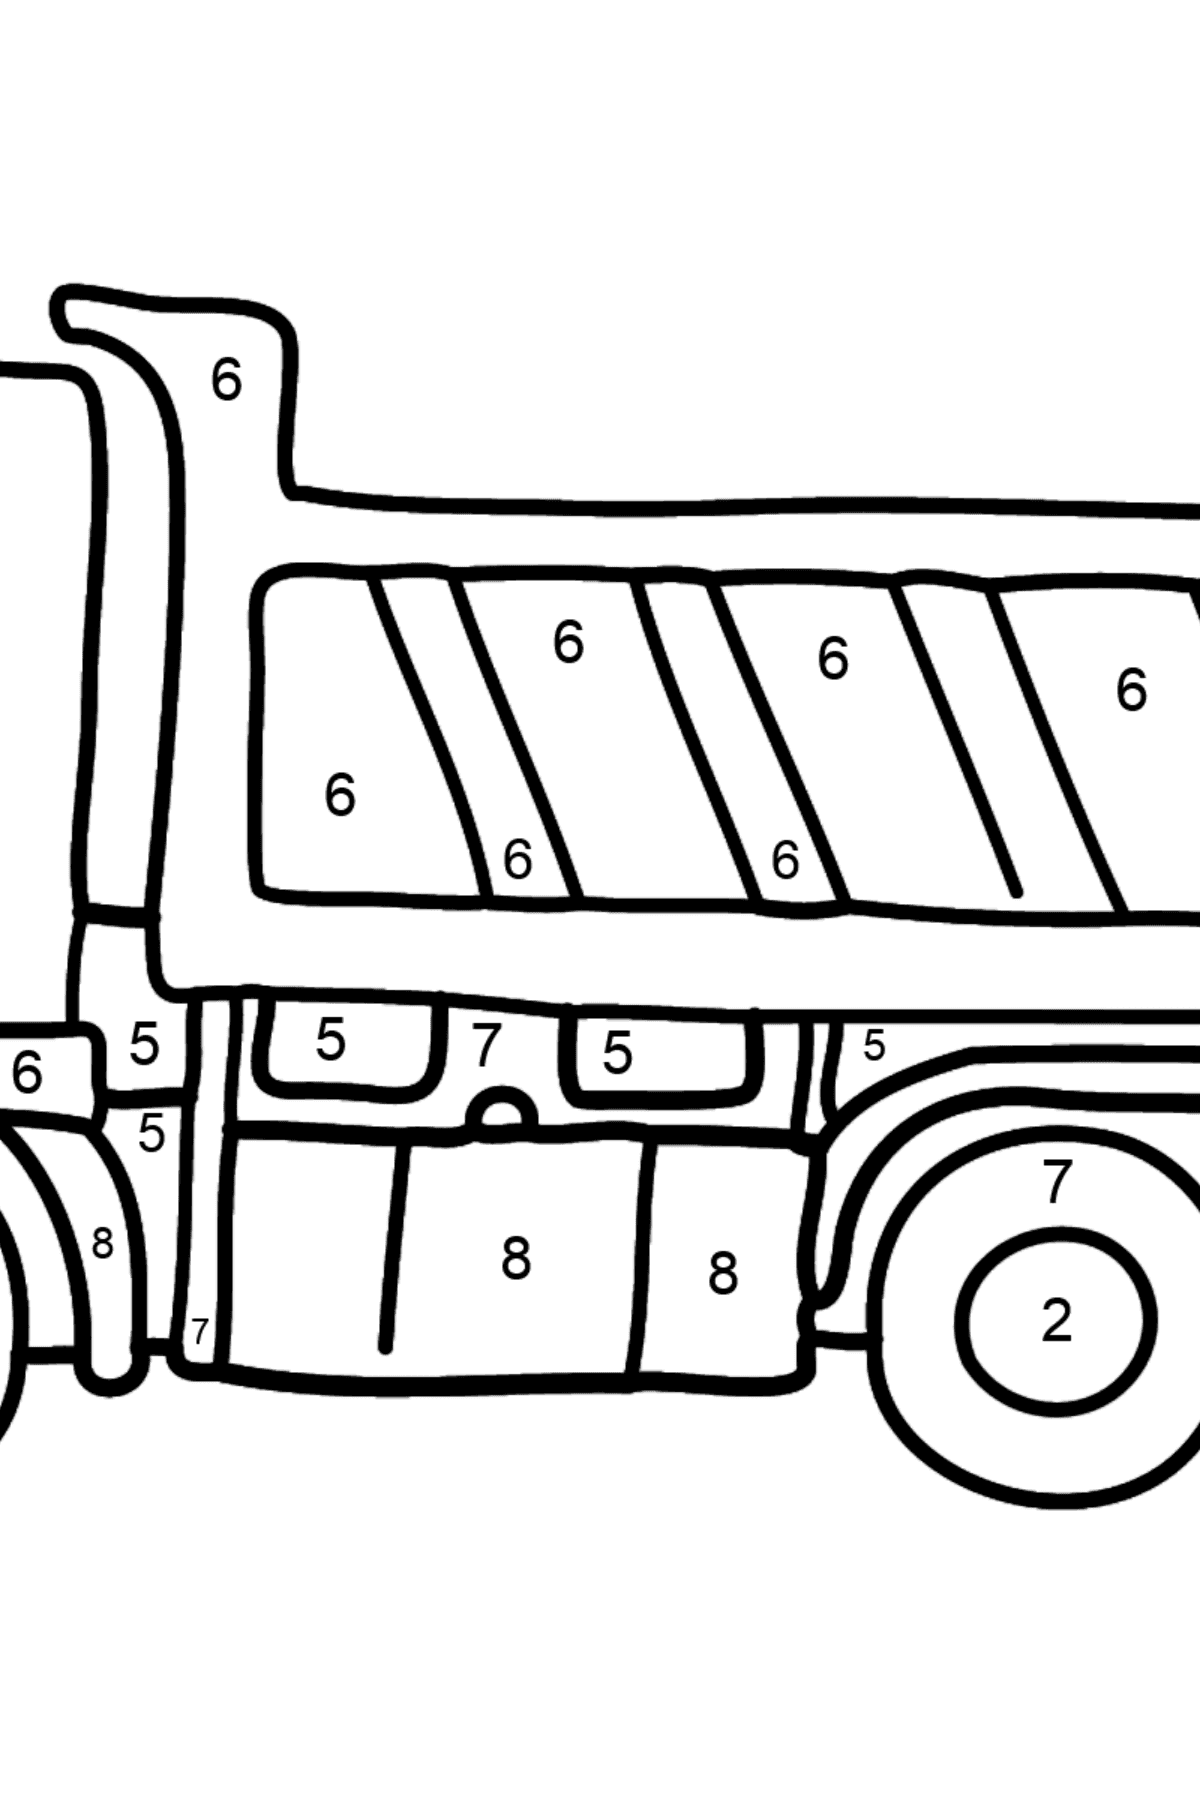 Coloriage - Un camion - Coloriage par Chiffres pour les Enfants